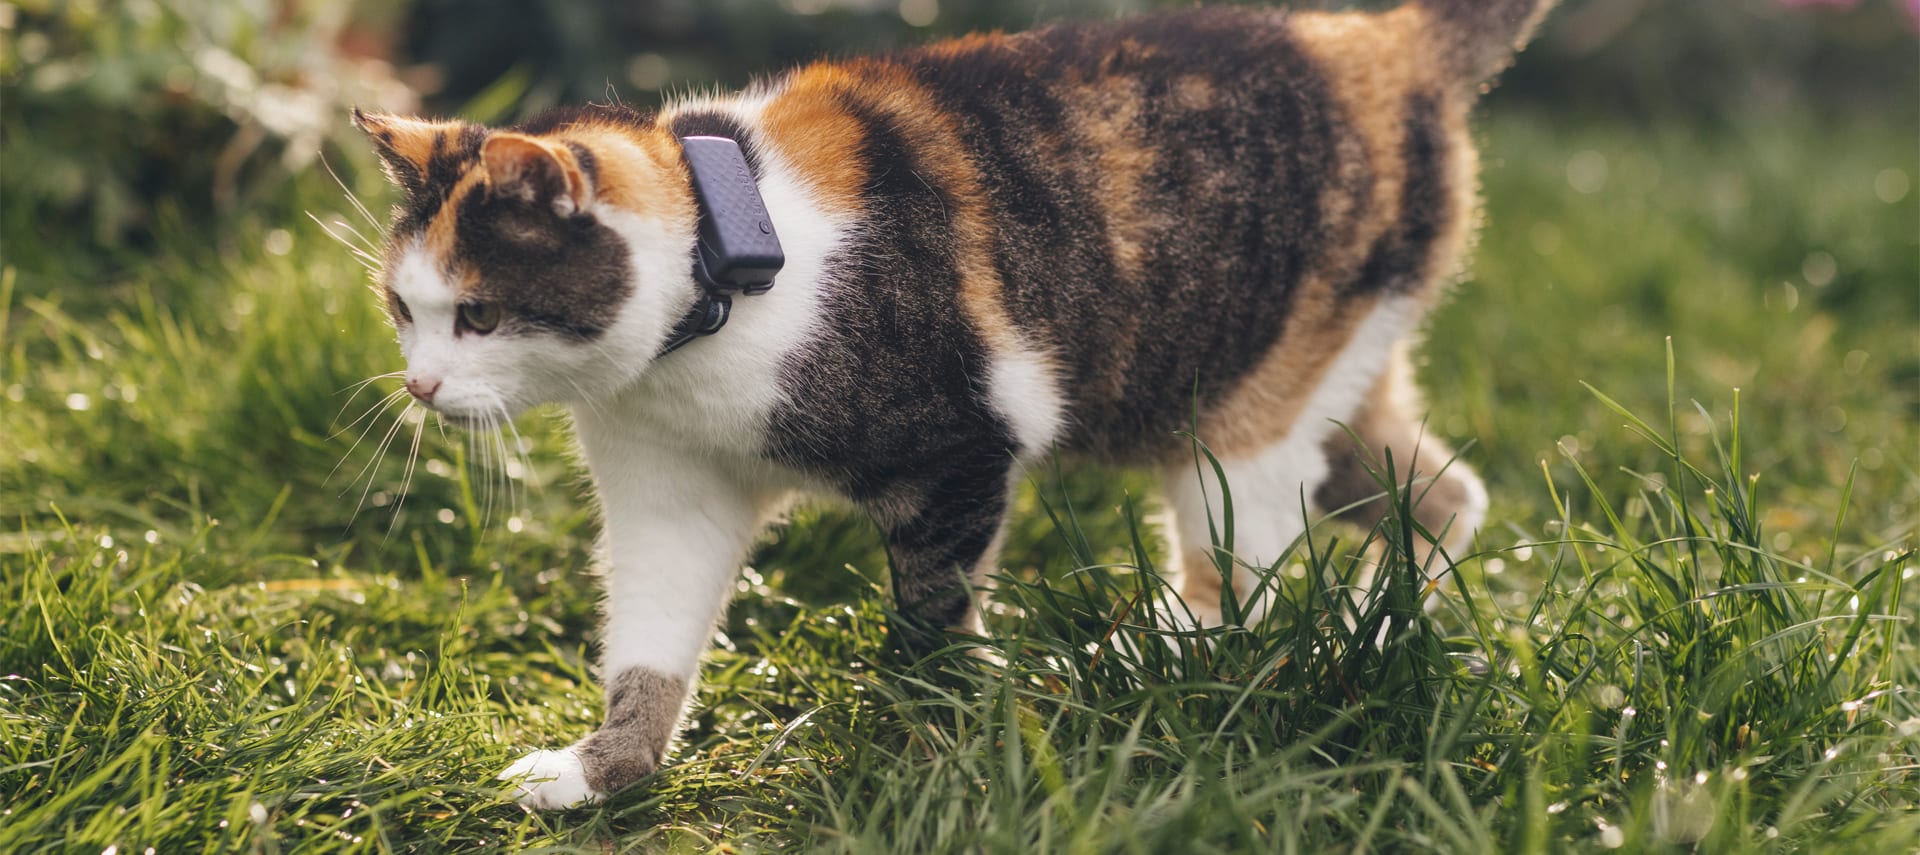 Właściciel trzyma kota z lokalizatorem GPS